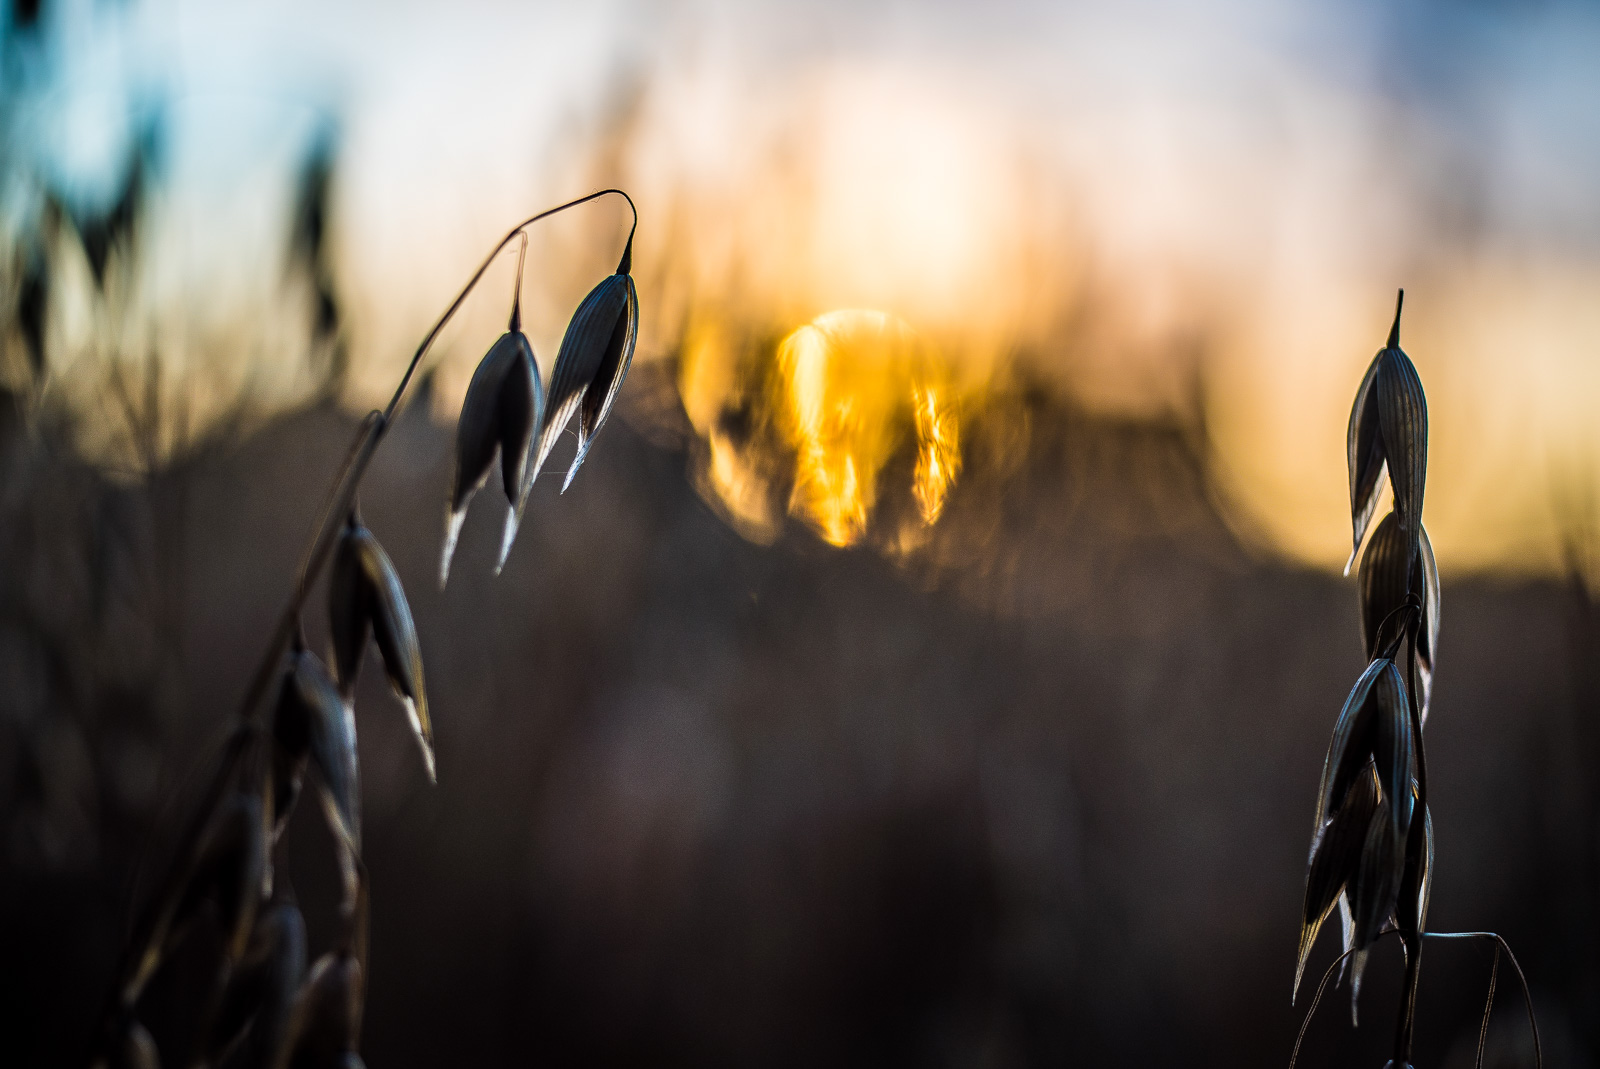 Ein GetreideFeld im GegenLicht vor untergehender Sonne. Im VorderGrund scharf zwei HaferStängel.